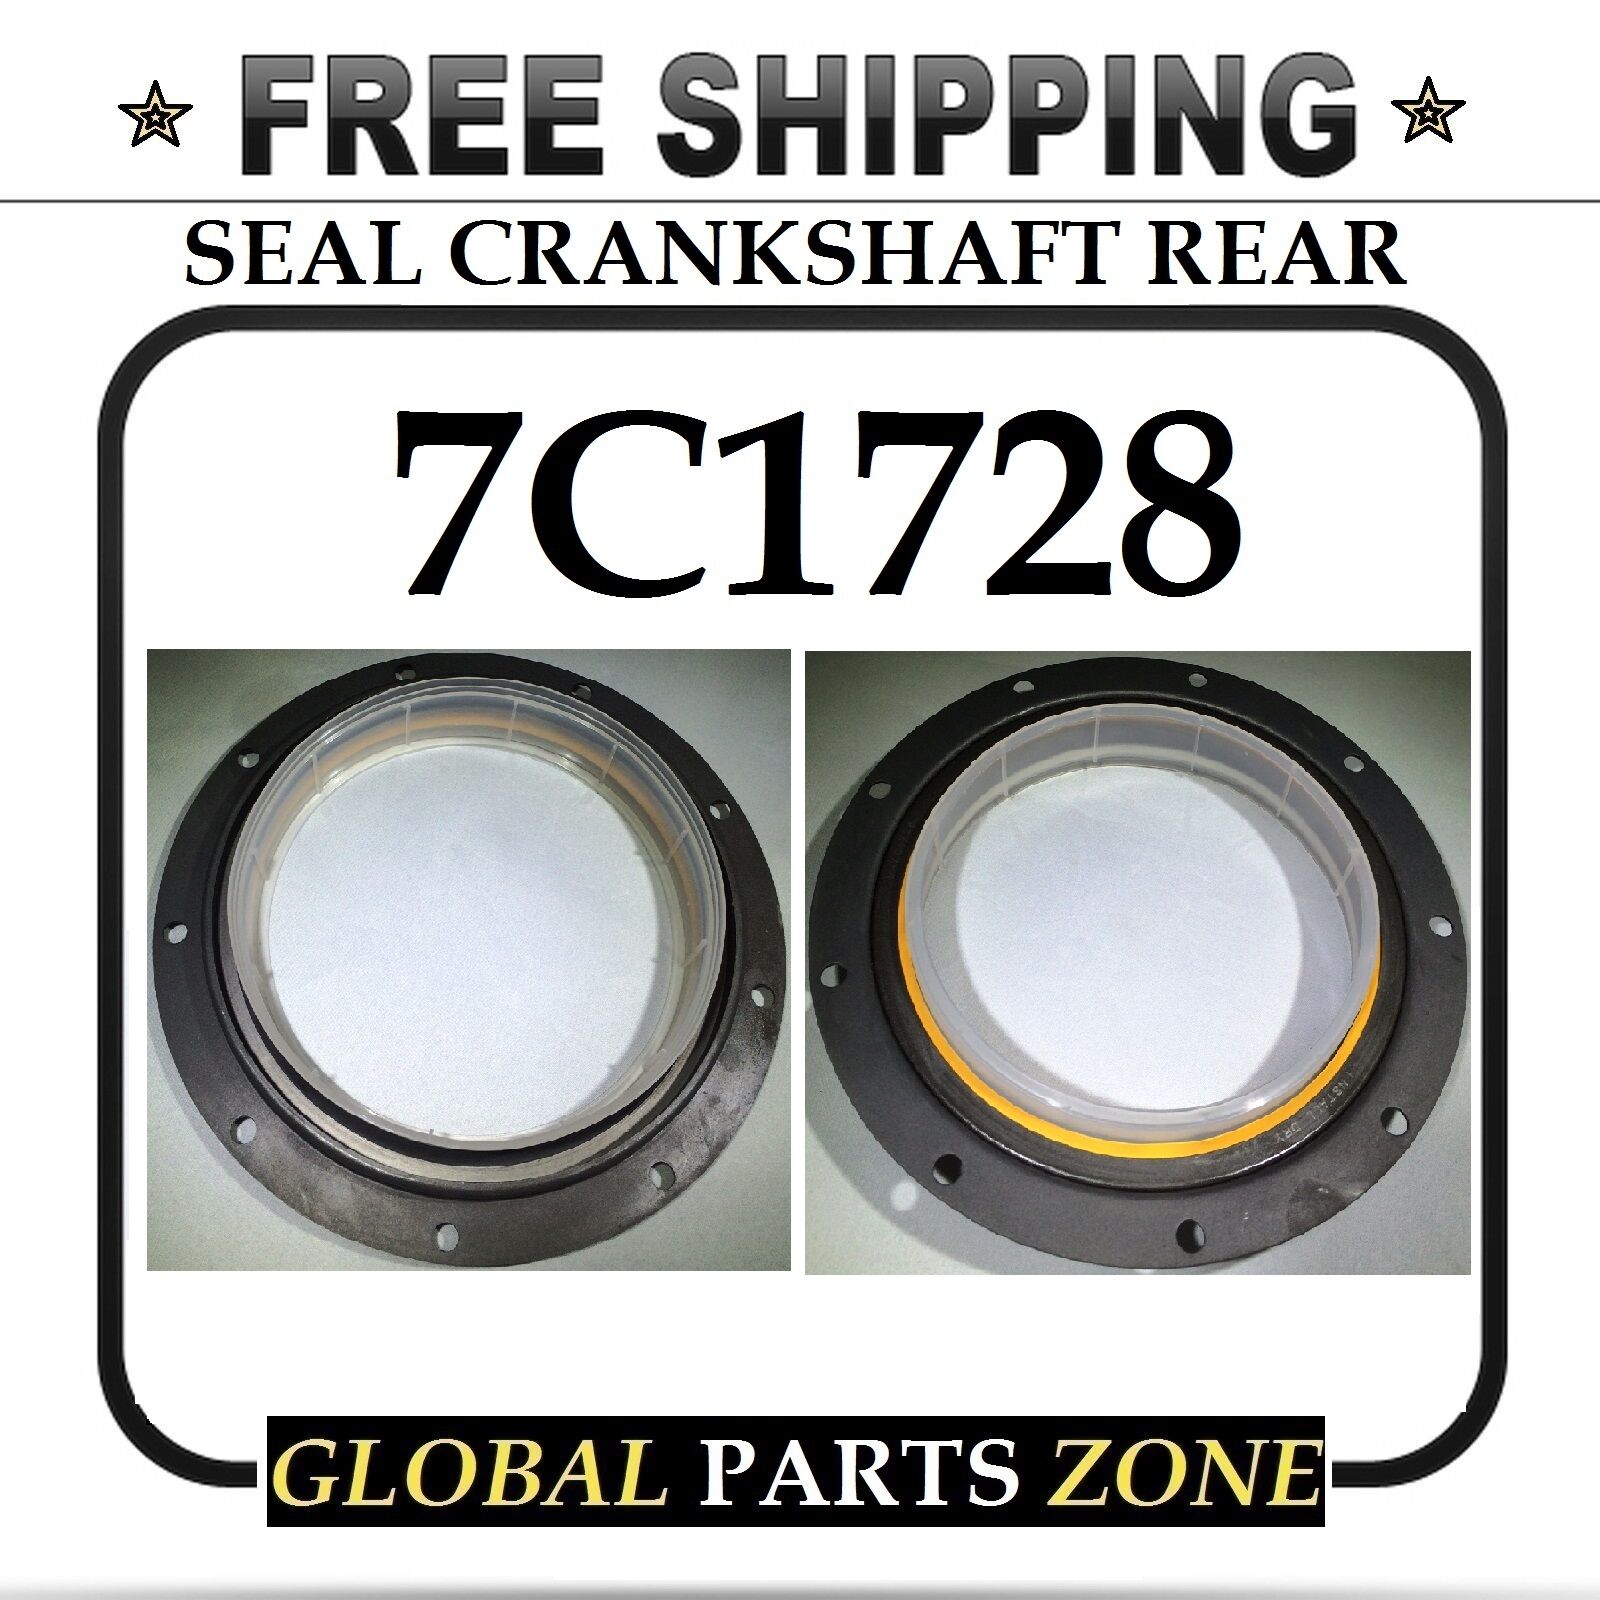 NEW SEAL CRANKSHAFT REAR 7C1728 7C-1728 for Caterpillar CAT C12 